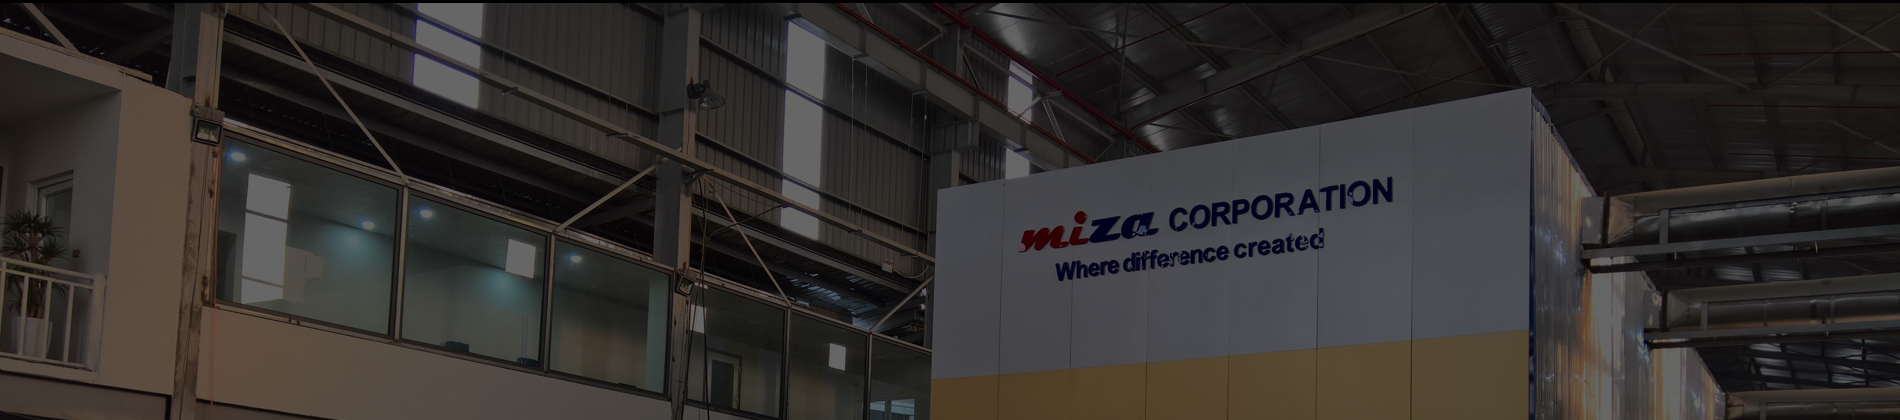 Công ty Cổ phần Miza vinh dự nhận bằng khen của UNBD Huyện Sóc Sơn – Hà Nội